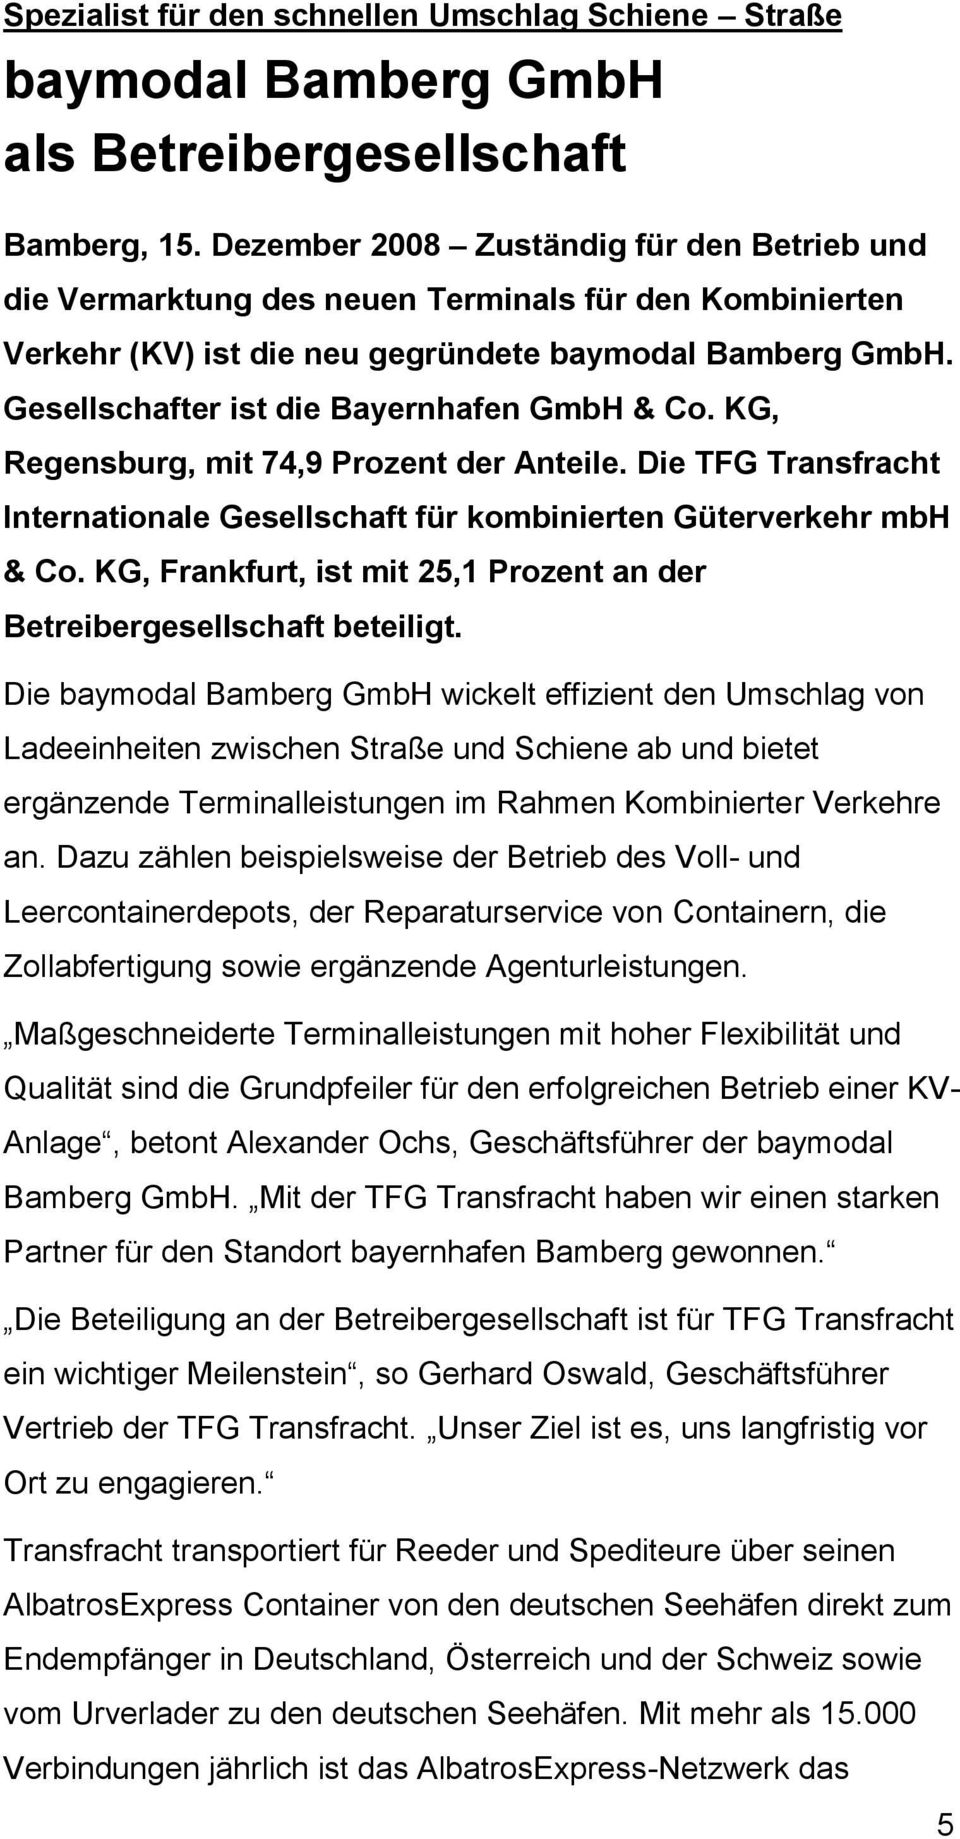 Gesellschafter ist die Bayernhafen GmbH & Co. KG, Regensburg, mit 74,9 Prozent der Anteile. Die TFG Transfracht Internationale Gesellschaft für kombinierten Güterverkehr mbh & Co.